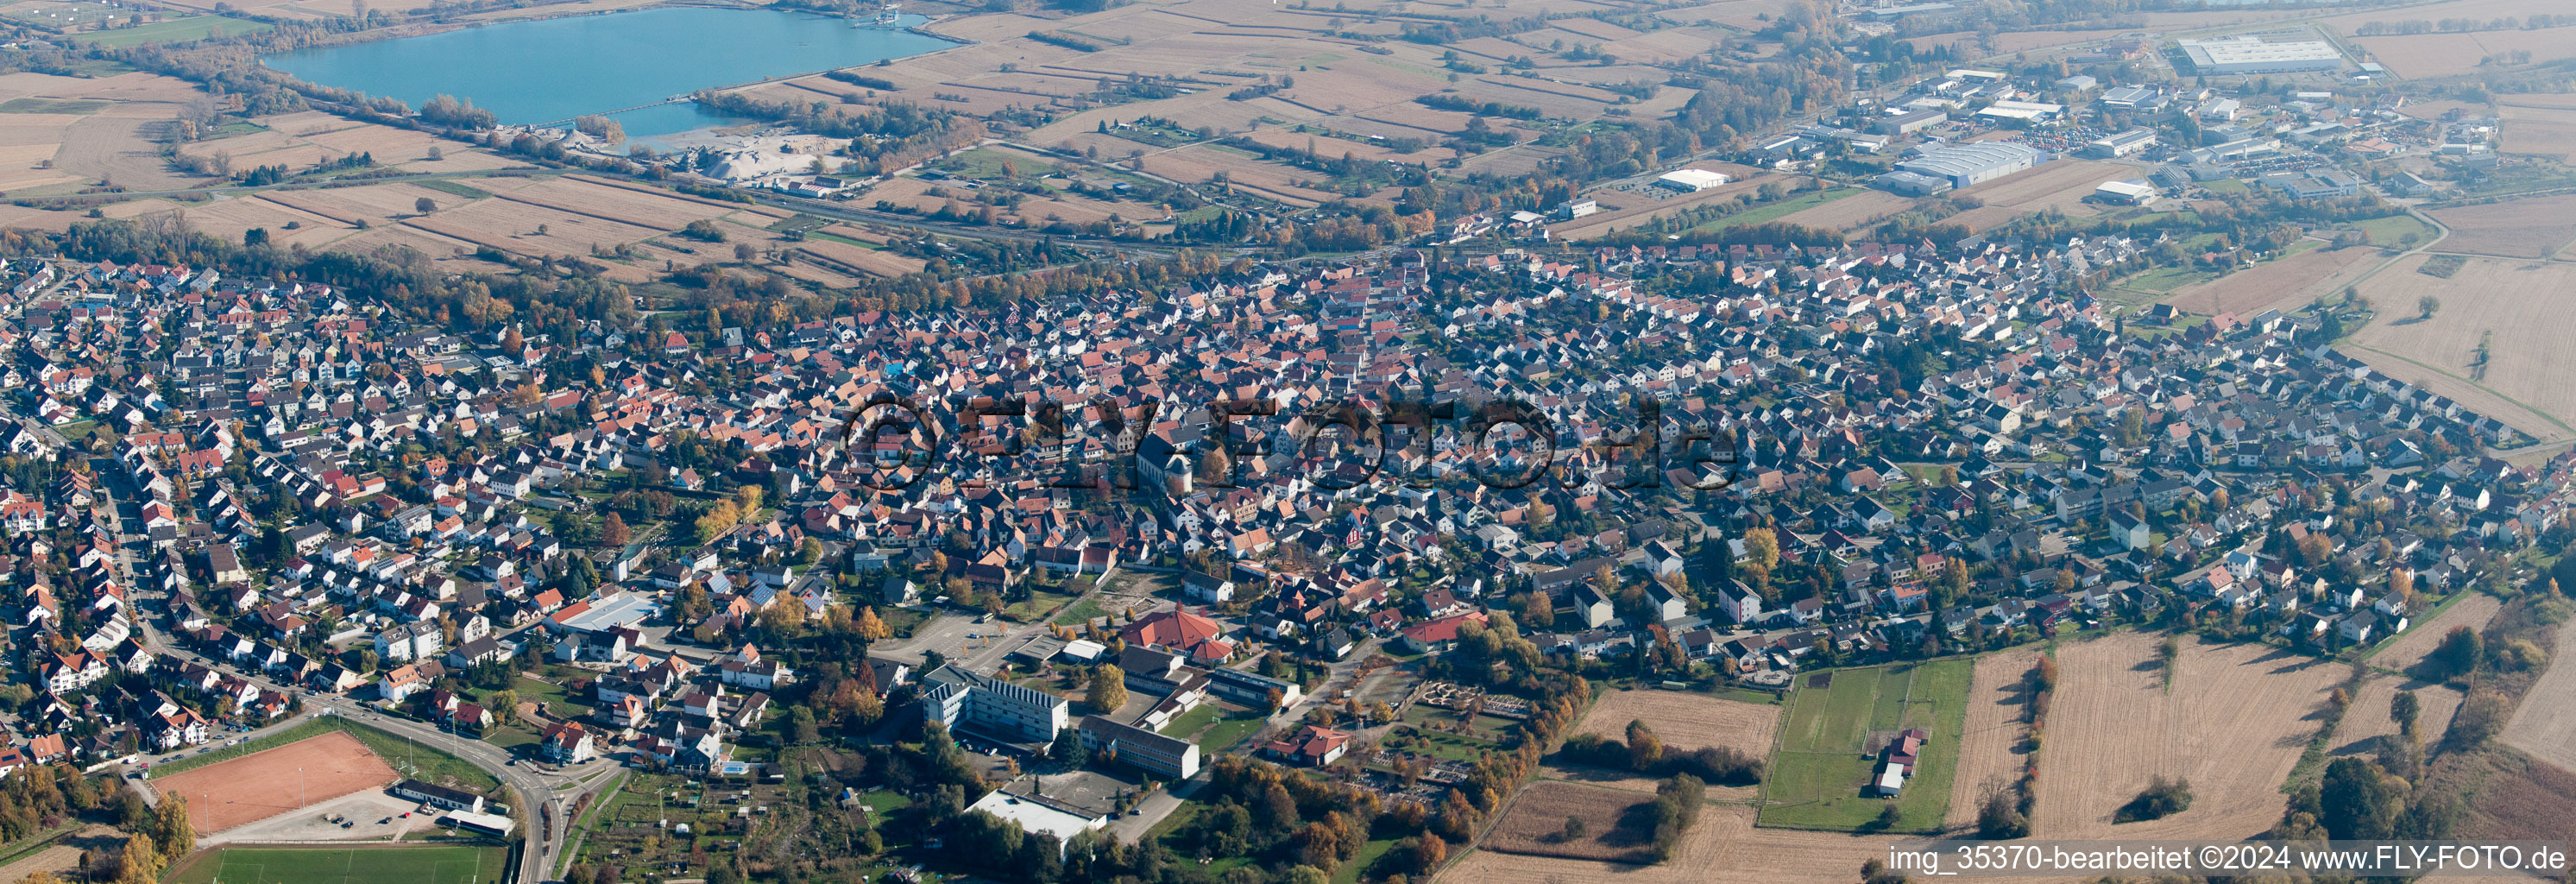 Vue aérienne de Panorama - vue en perspective des rues et des maisons des quartiers résidentiels à Hagenbach dans le département Rhénanie-Palatinat, Allemagne